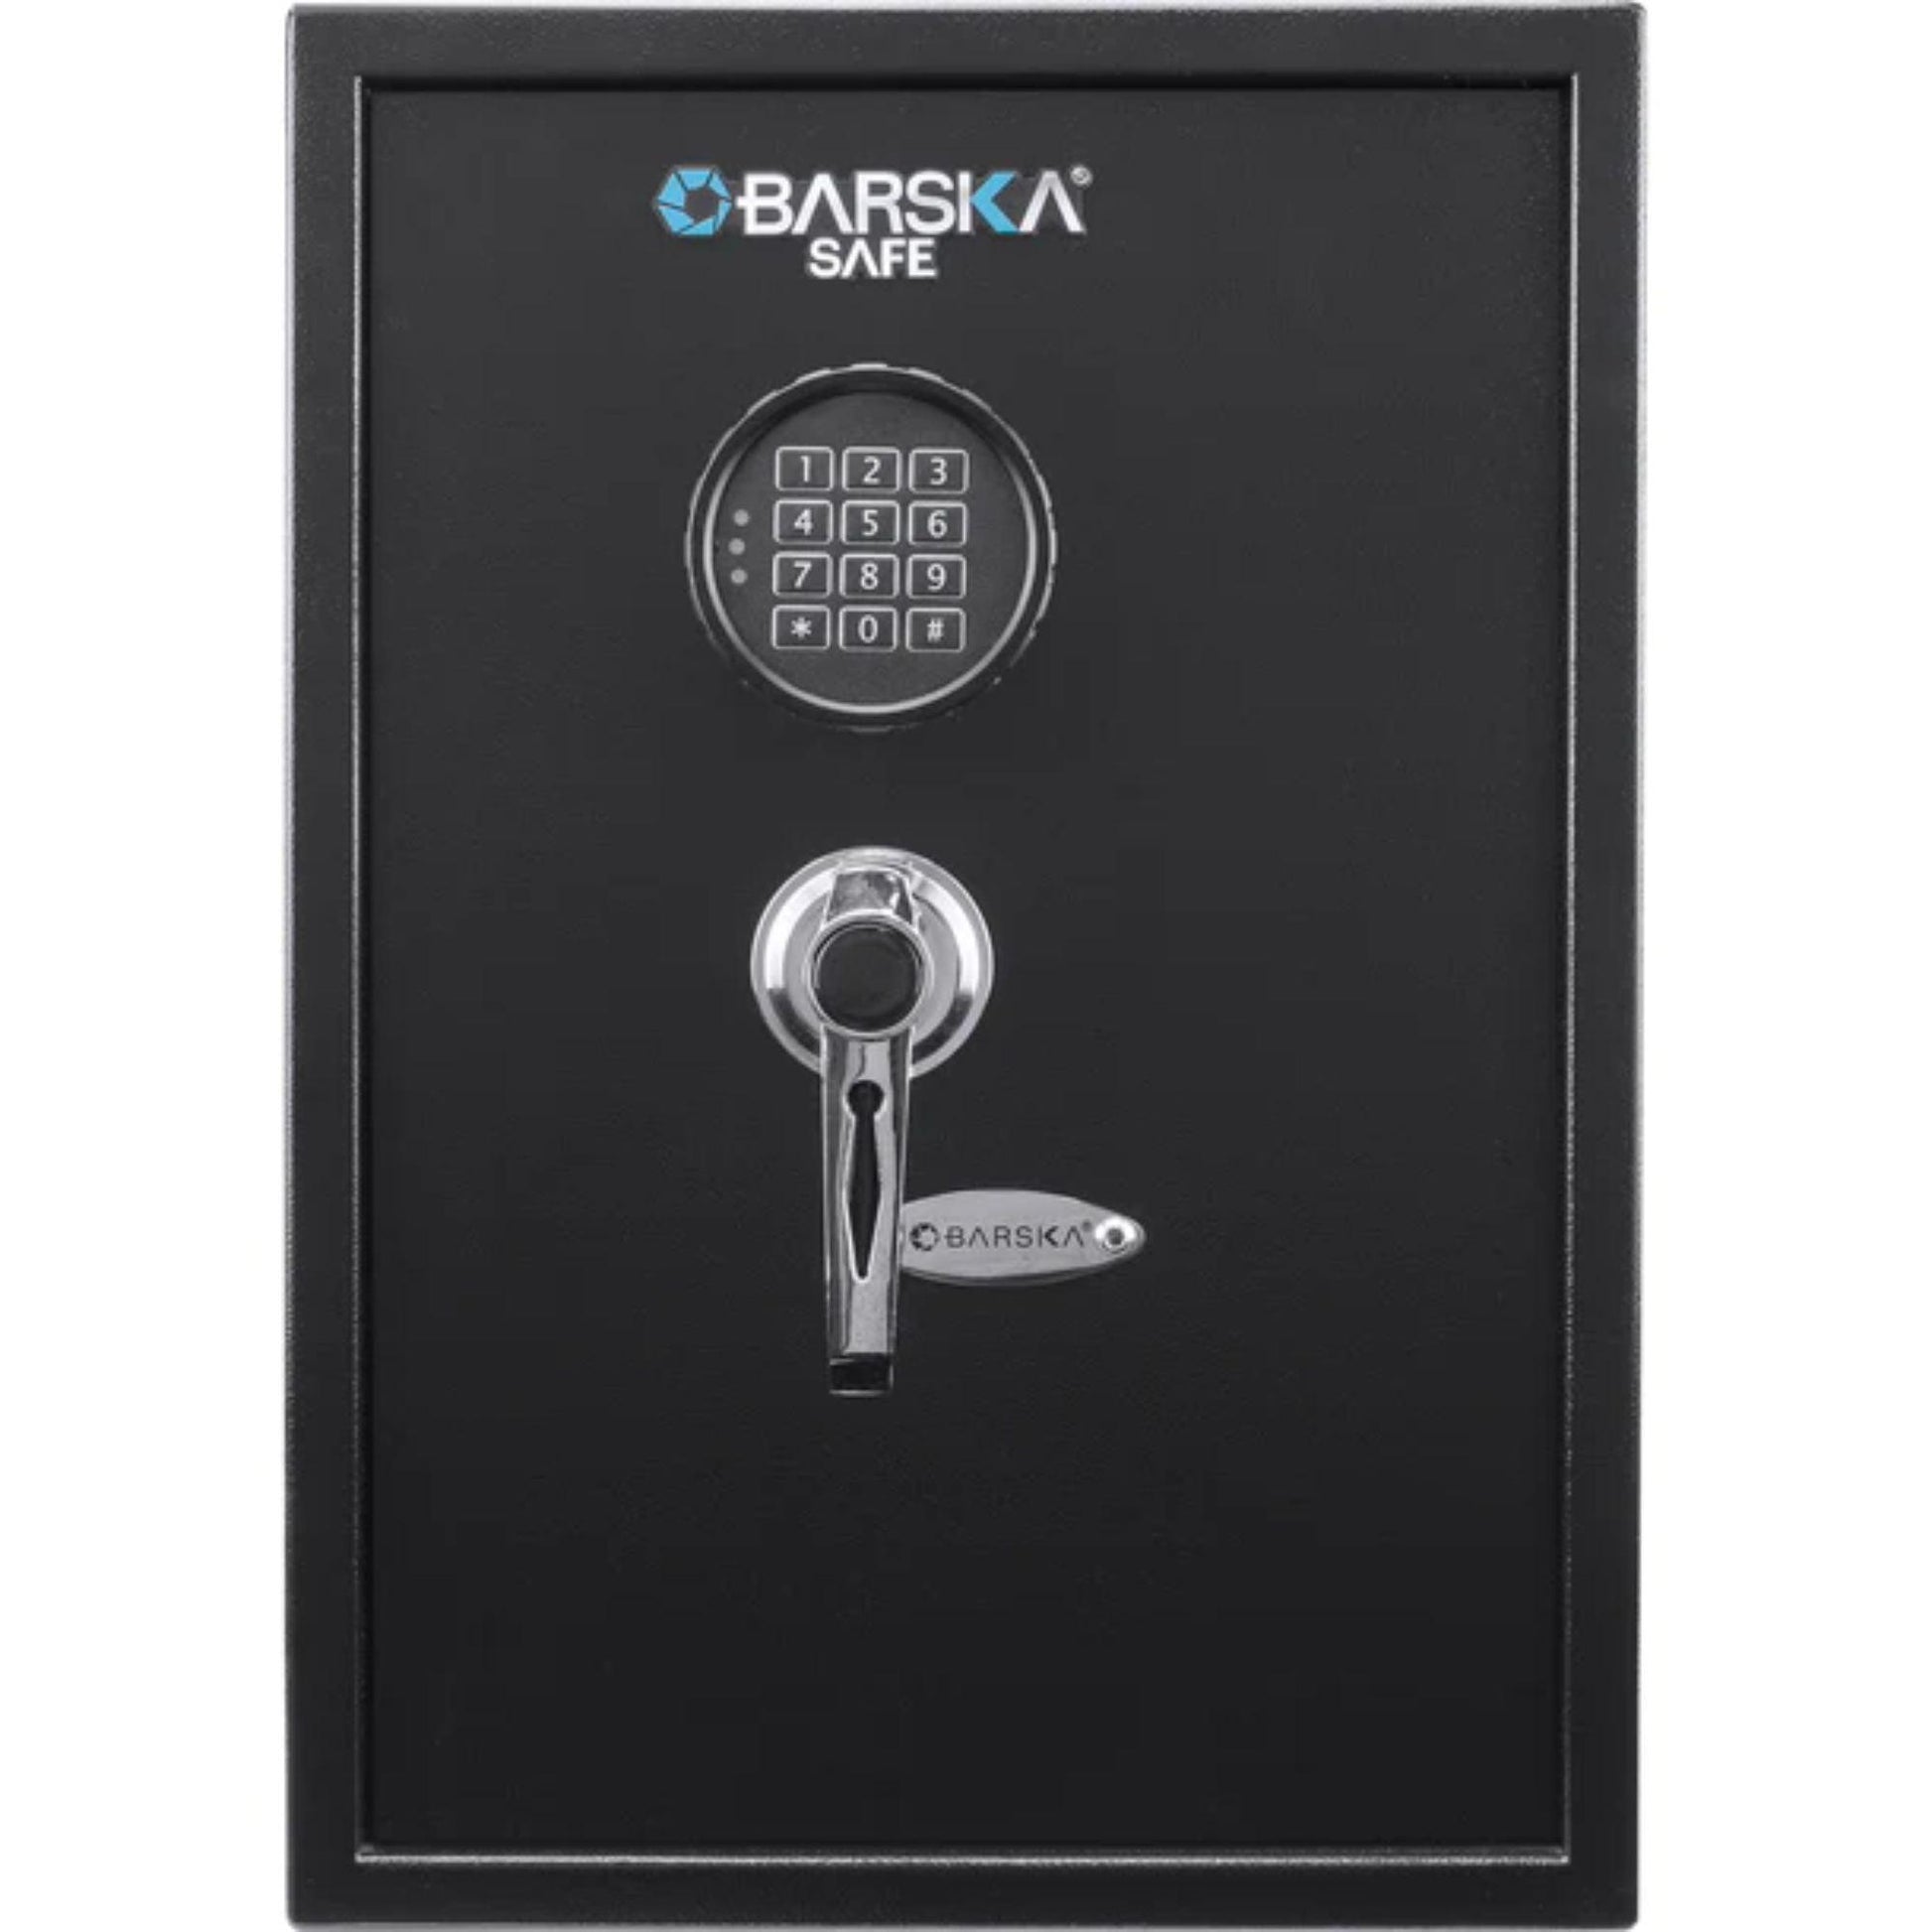 BARSKA Large Digital Keypad Safe - Silverlight Optics